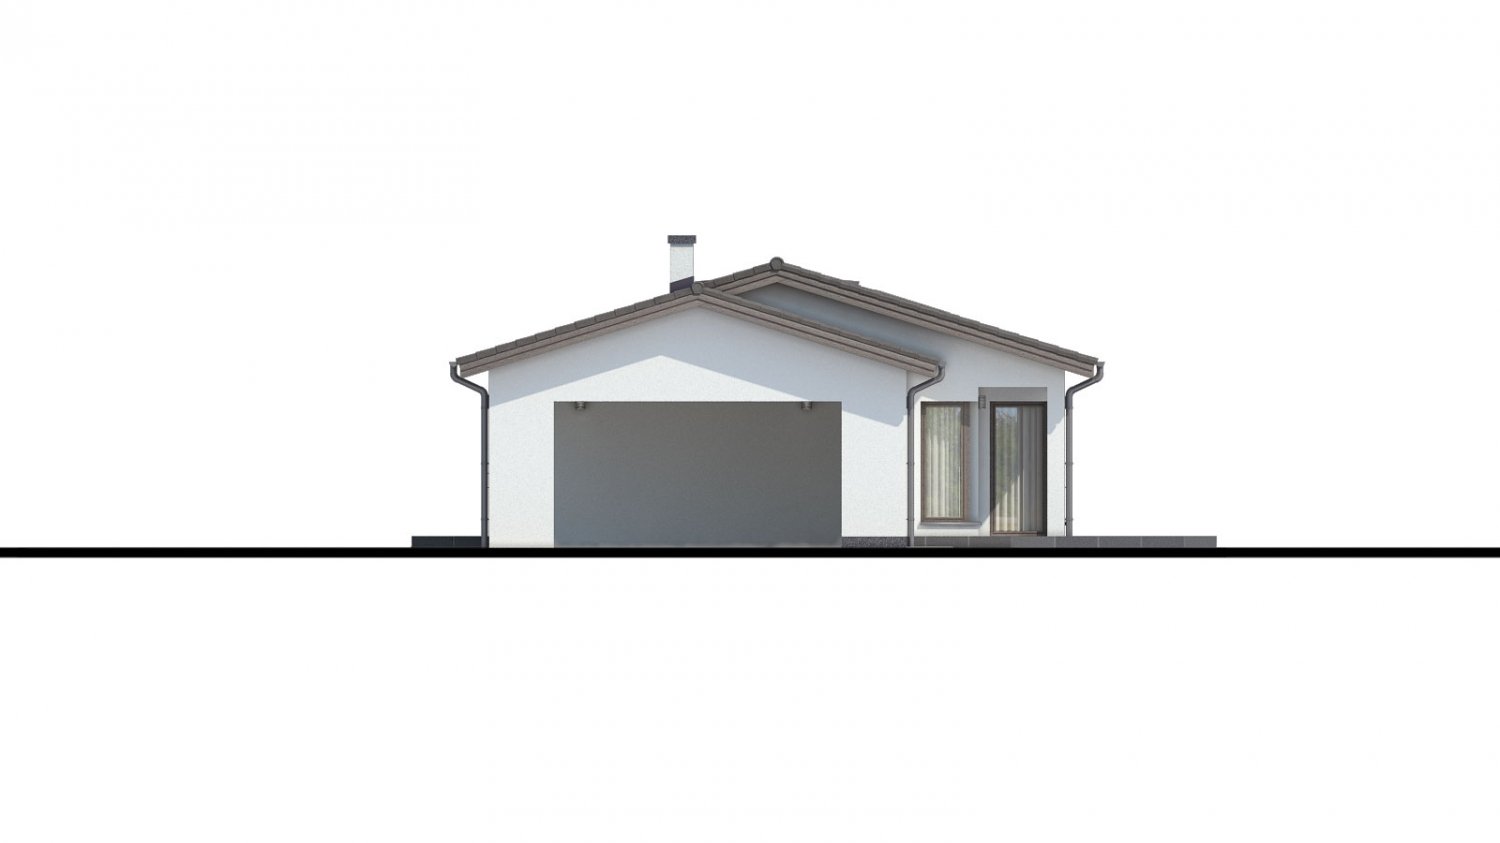 Pohľad 2. - Projekt domu bungalov s dvojgaráží a s prosvětlenou obývacím pokojem střešními okny.